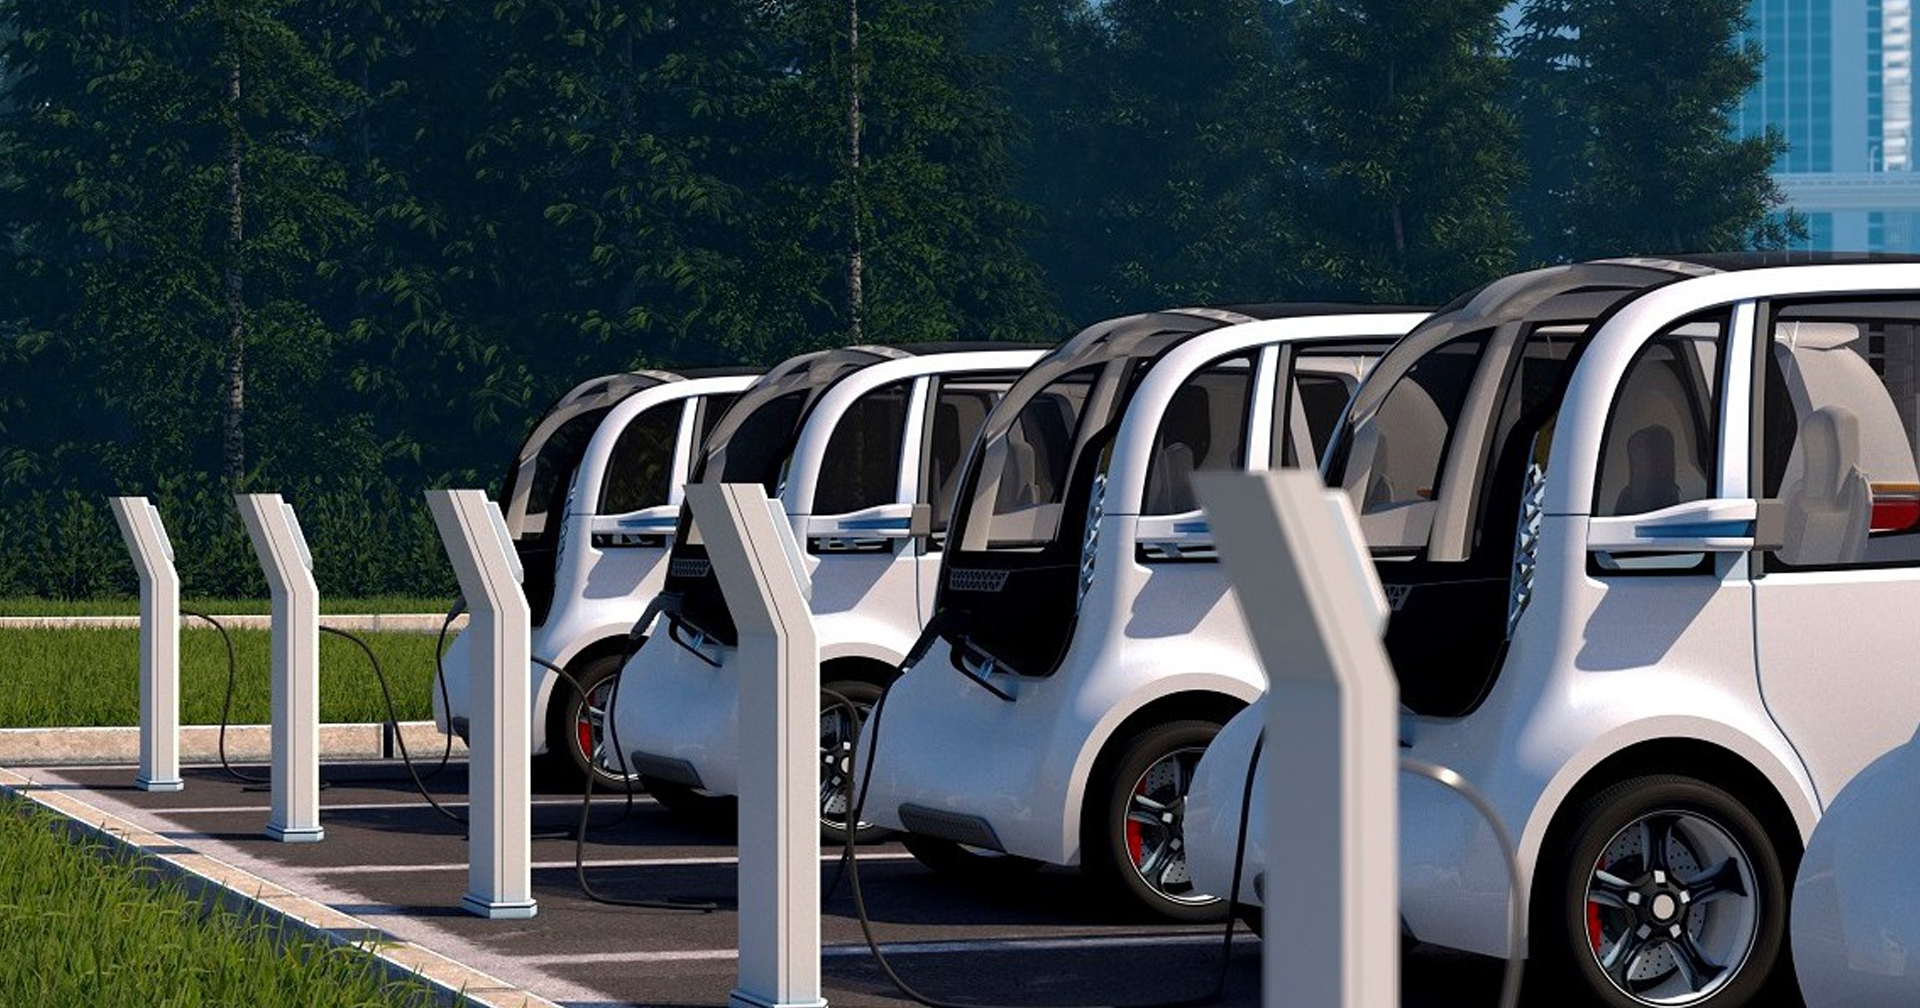 มณฑลเจ้อเจียงในจีนจะสร้าง “เสาชาร์จ” รถยนต์ไฟฟ้าอัจฉริยะ 300,000 ต้น ภายในปี 2025